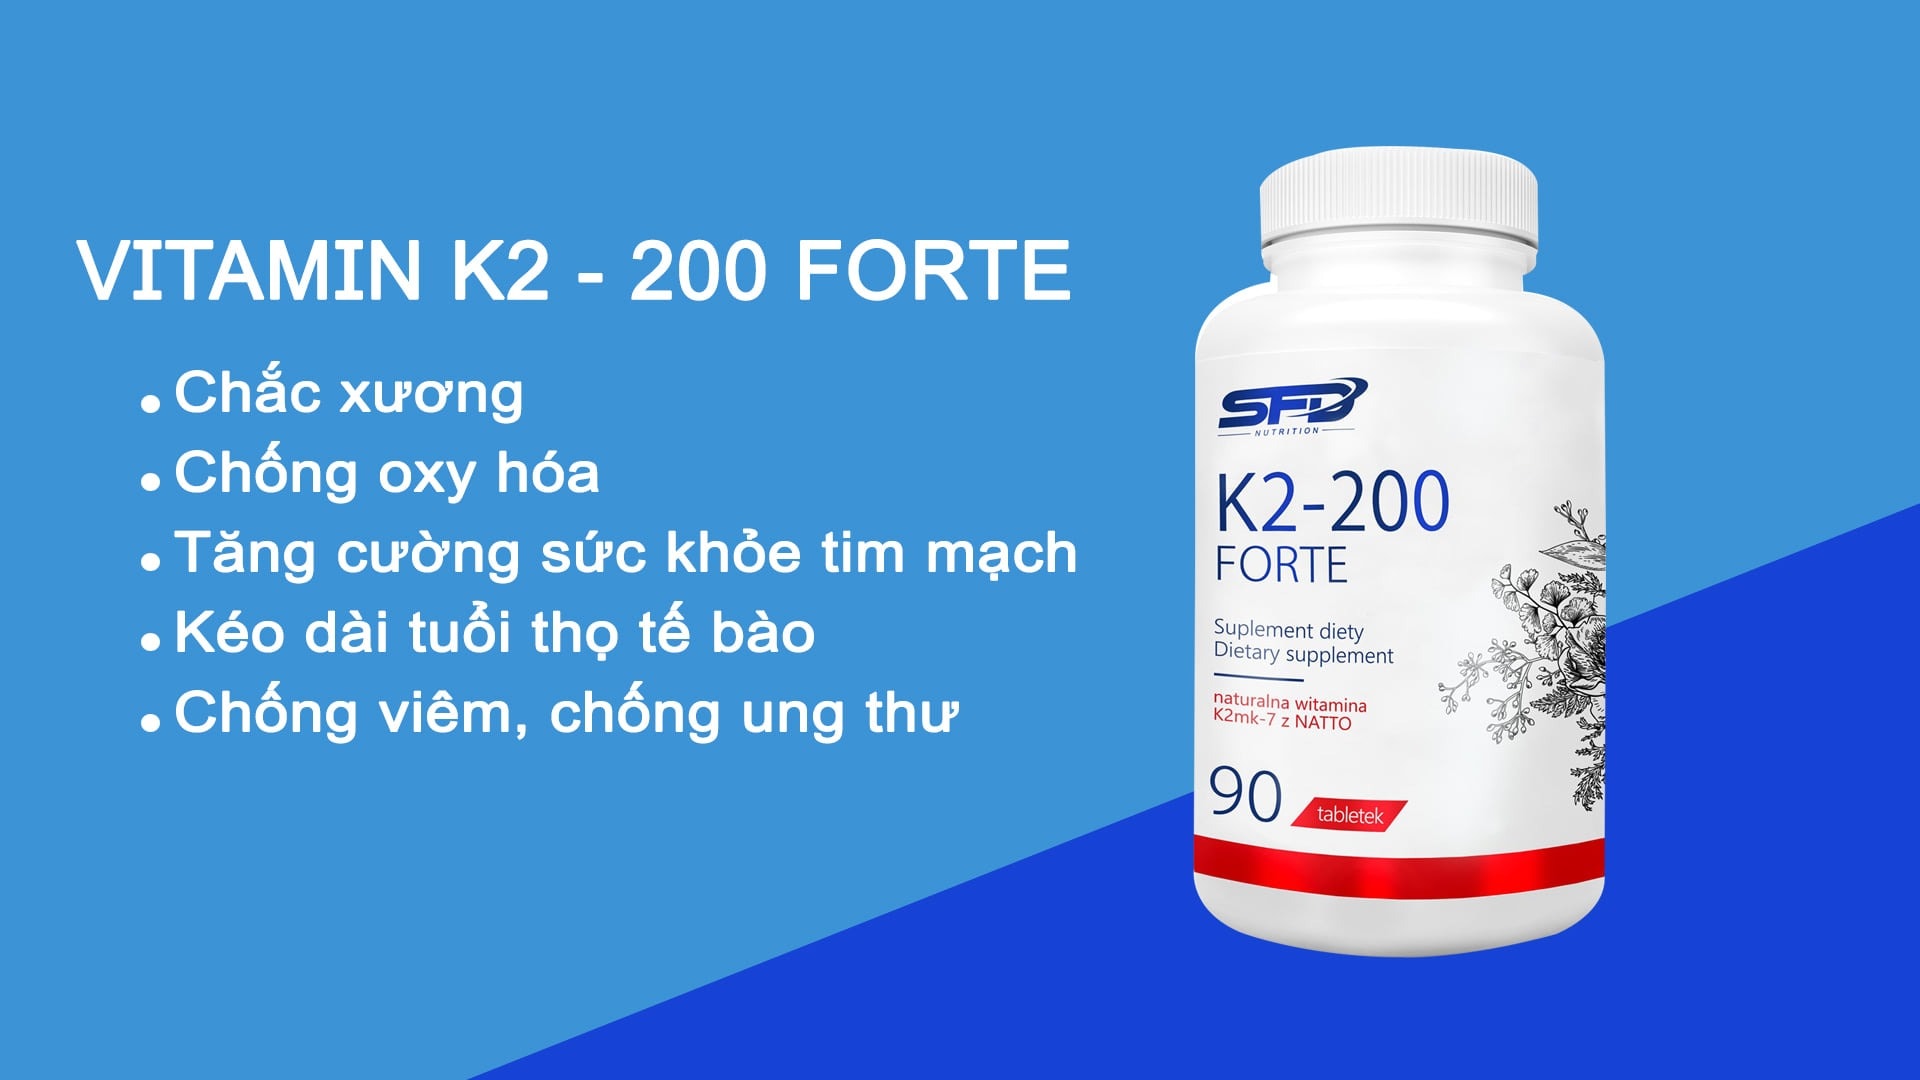 SFD - Vitamin K2-200 Forte (90 viên) - 131620367 108656007795339 347037